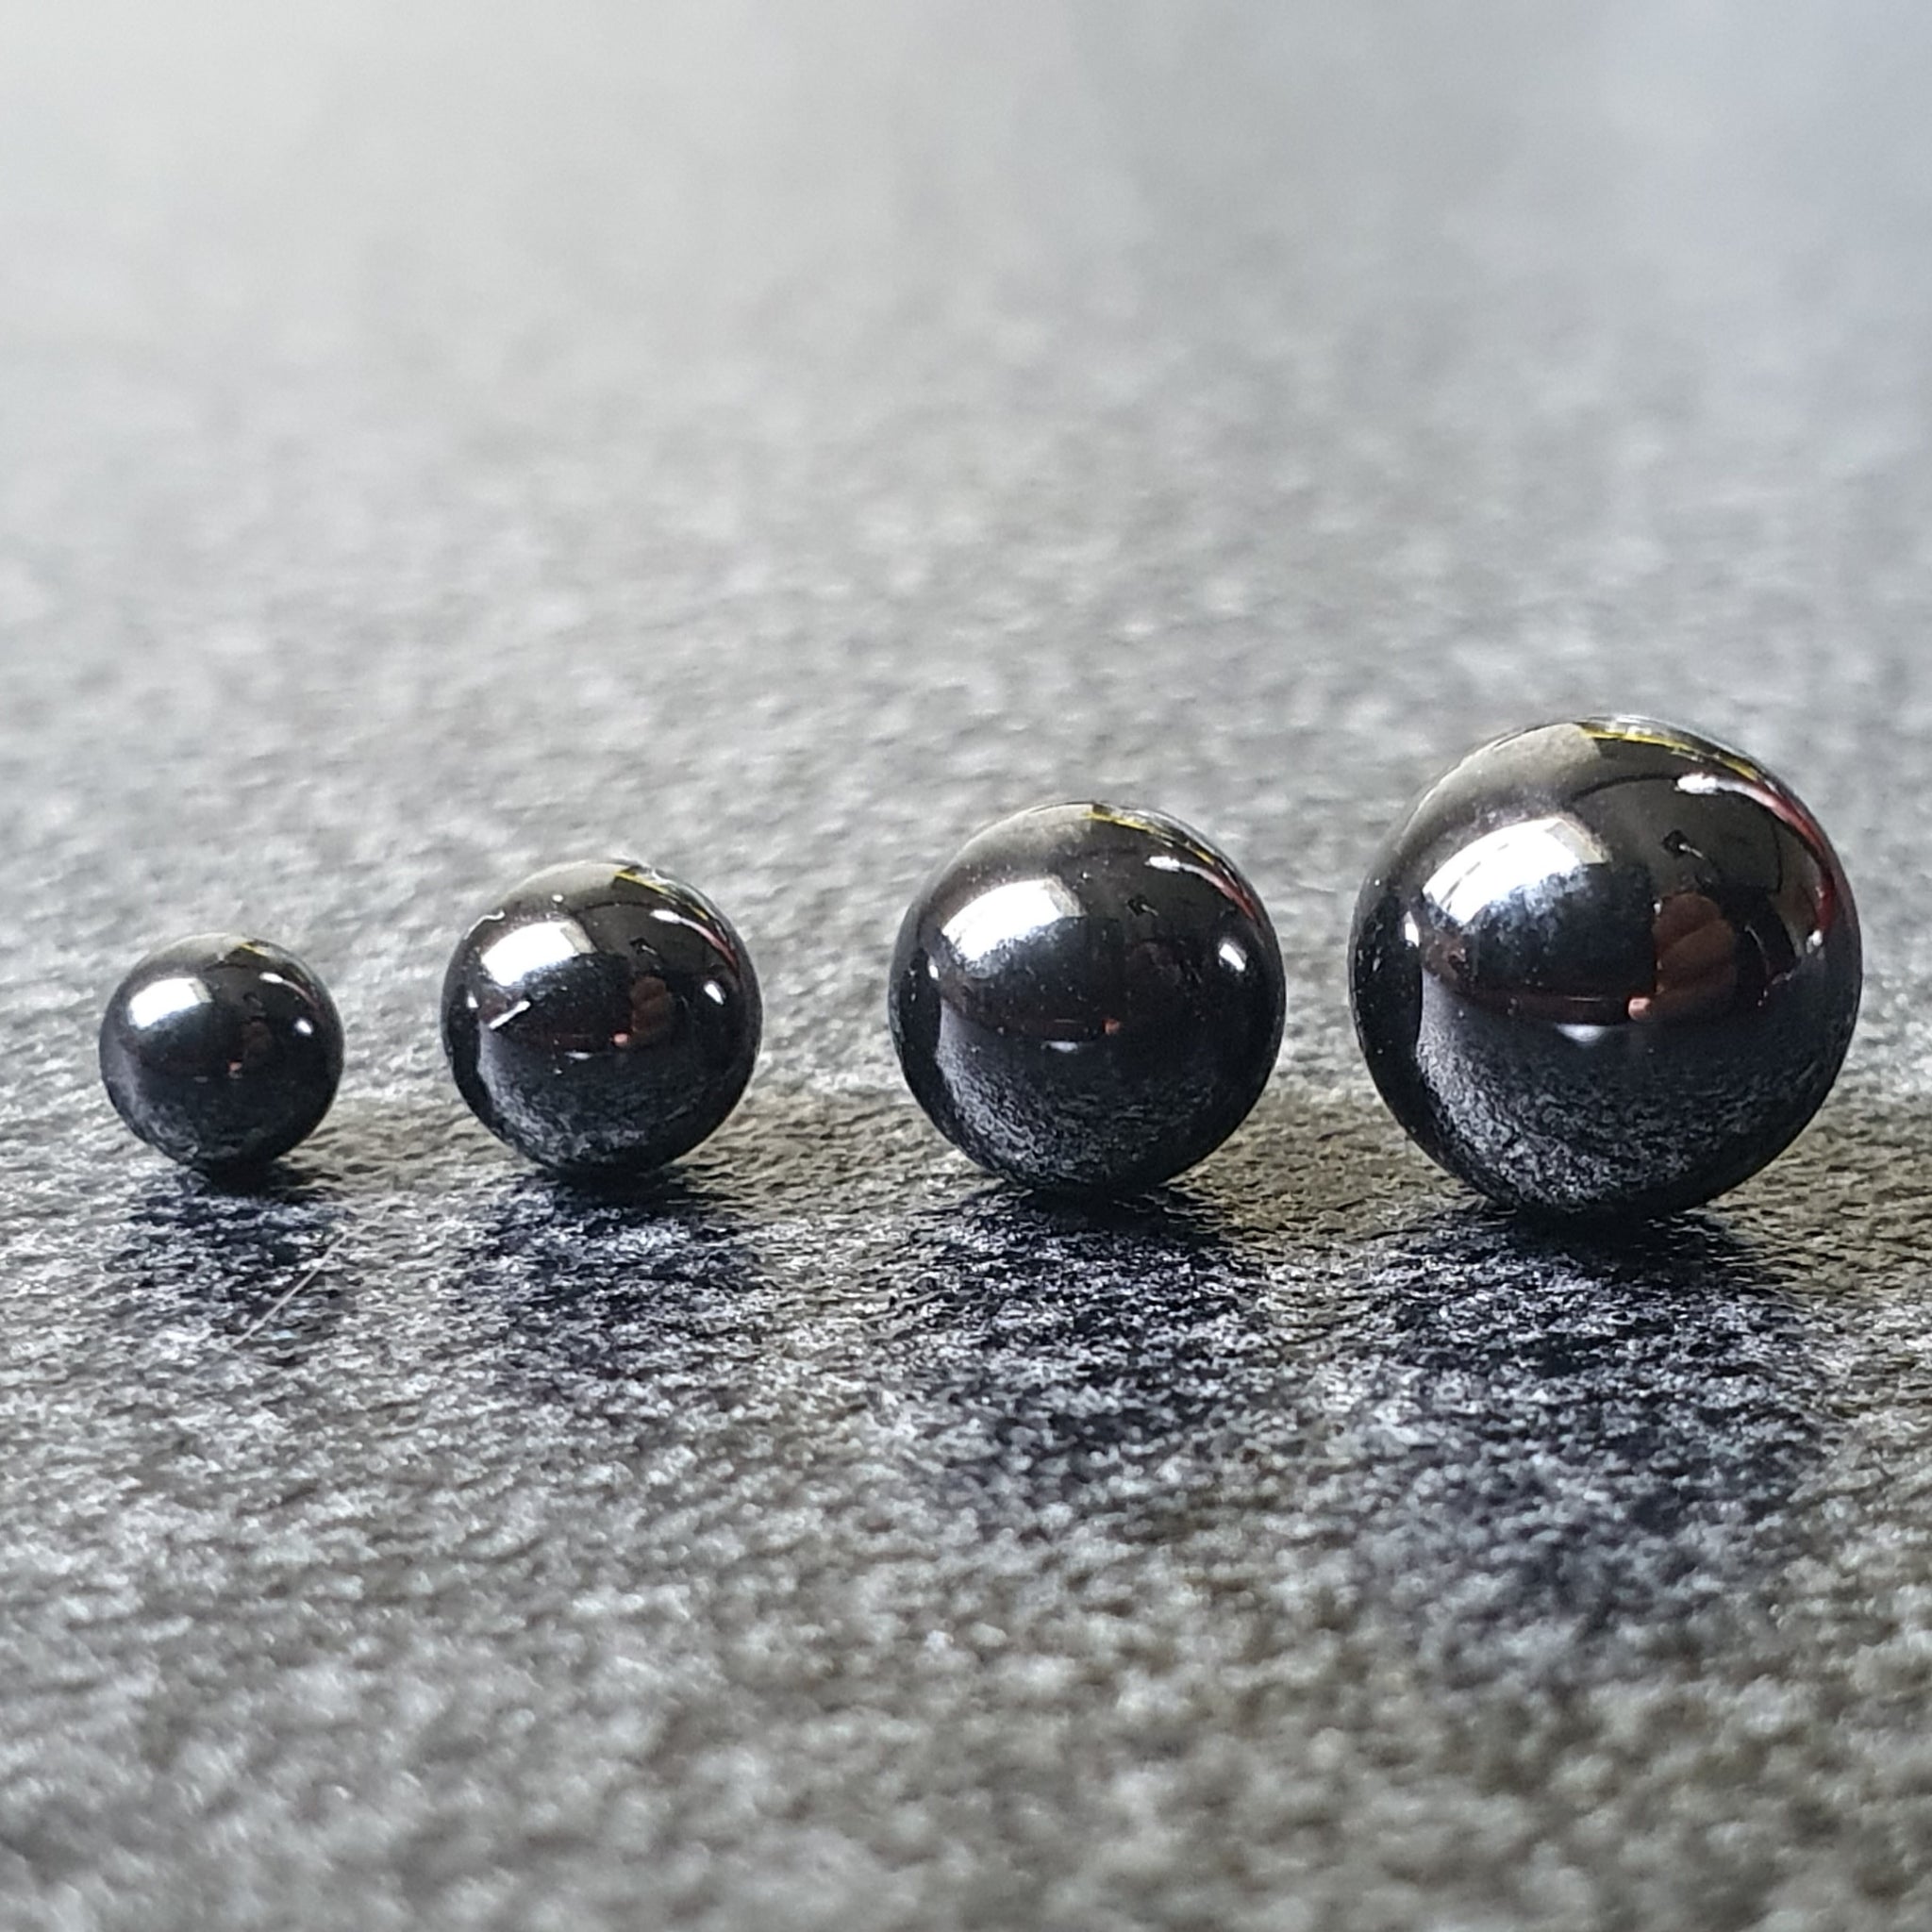 3mm Ruby Terp Pearls